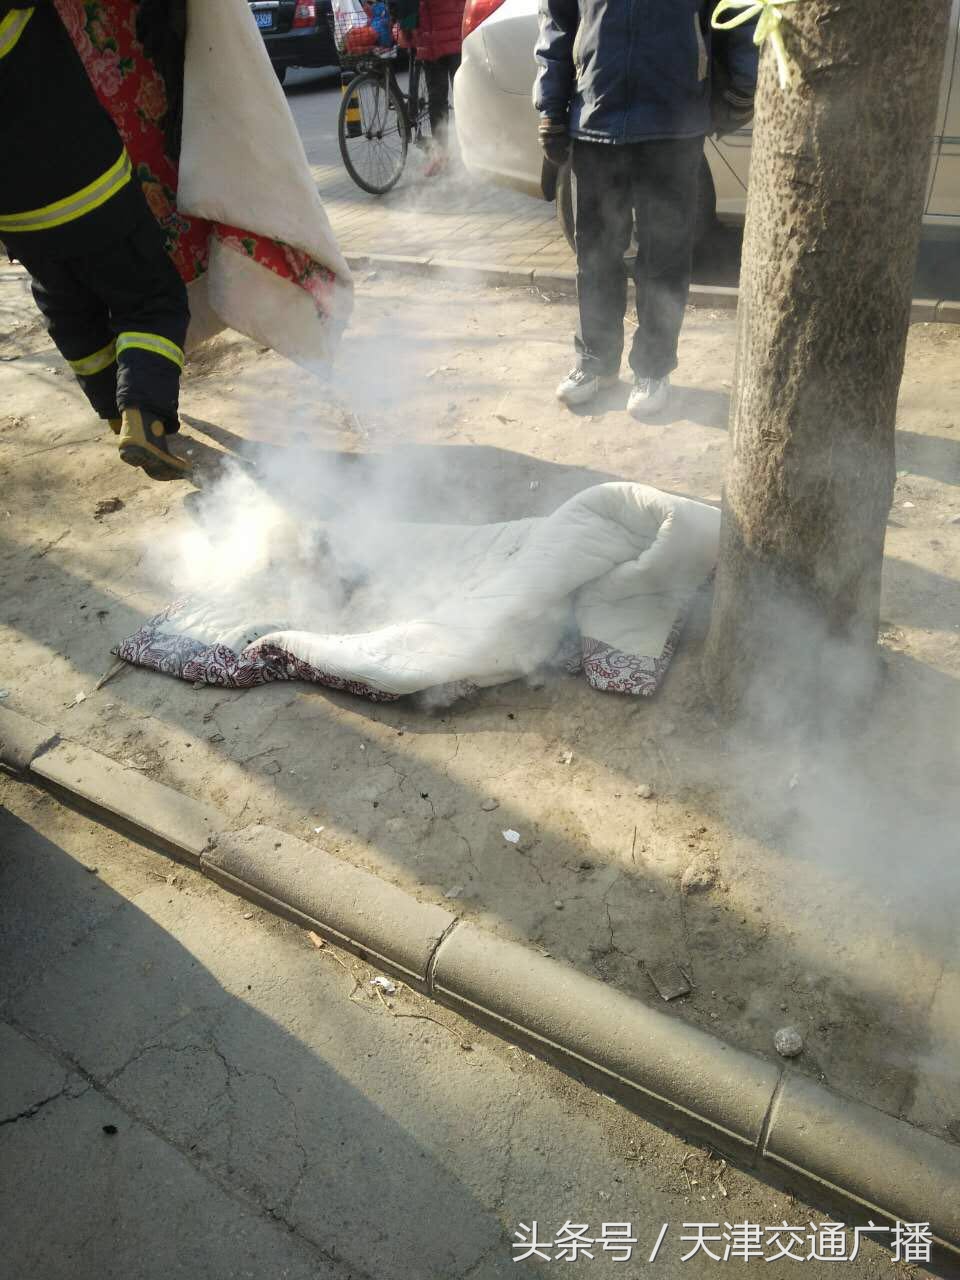 河北区一居民家中棉被起火 消防前往处置